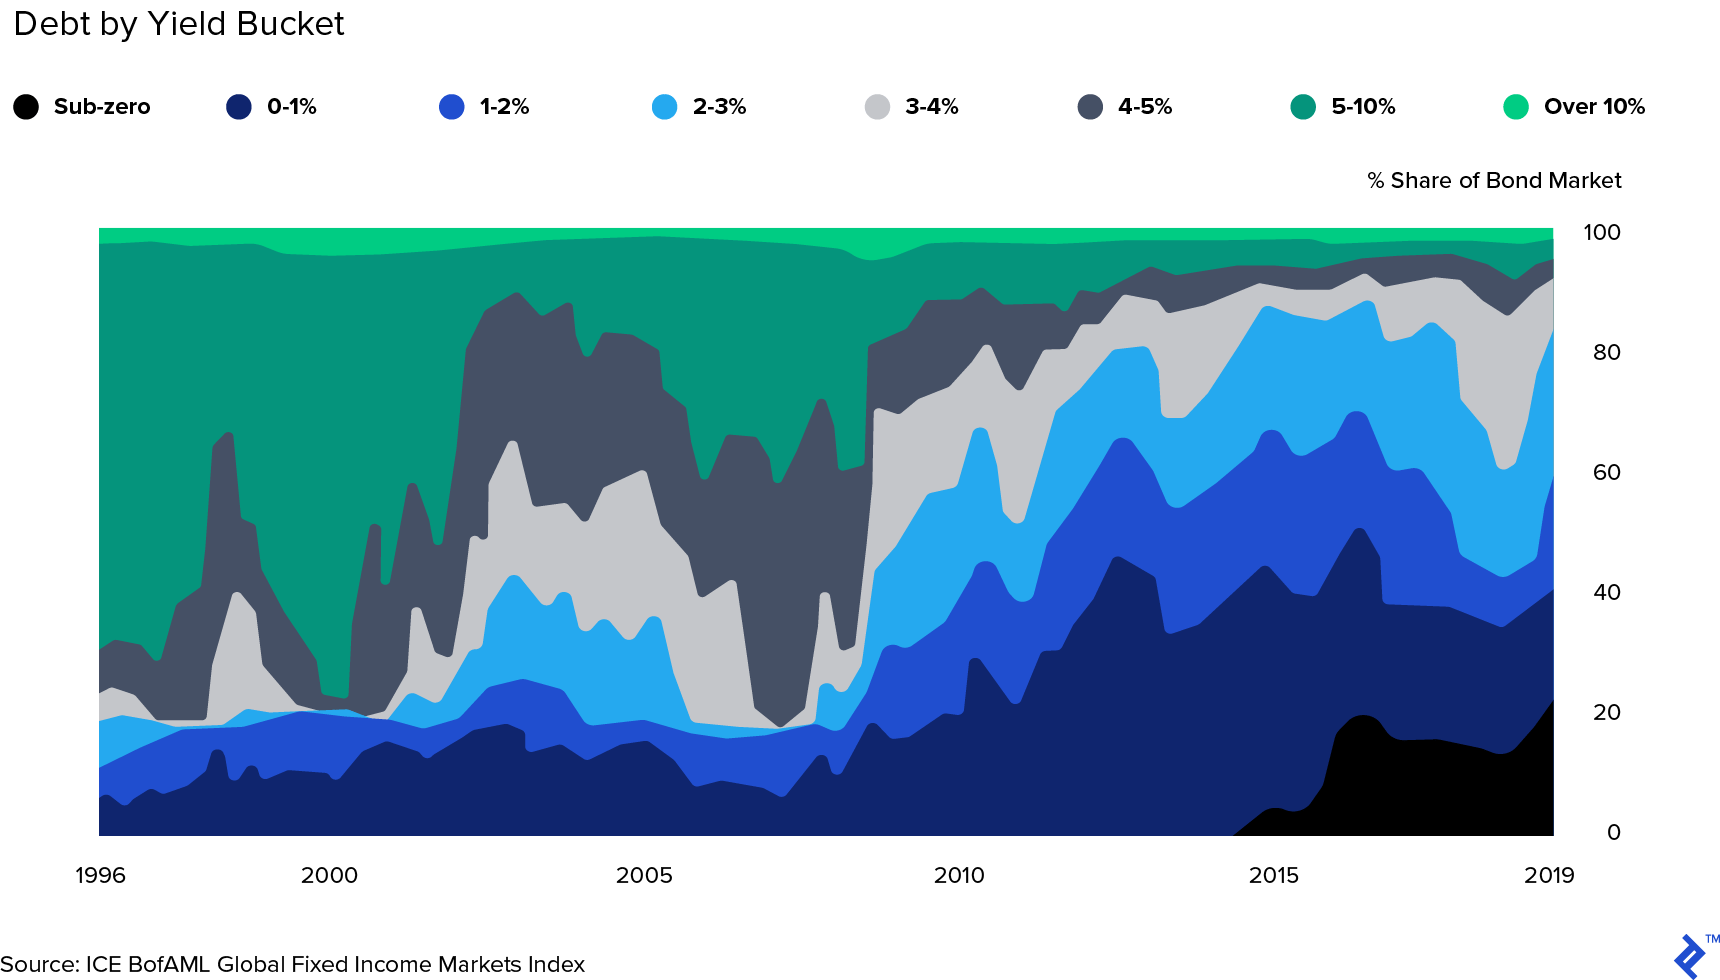 按收益率区间划分的全球债券市场份额（1996 - 2019年）